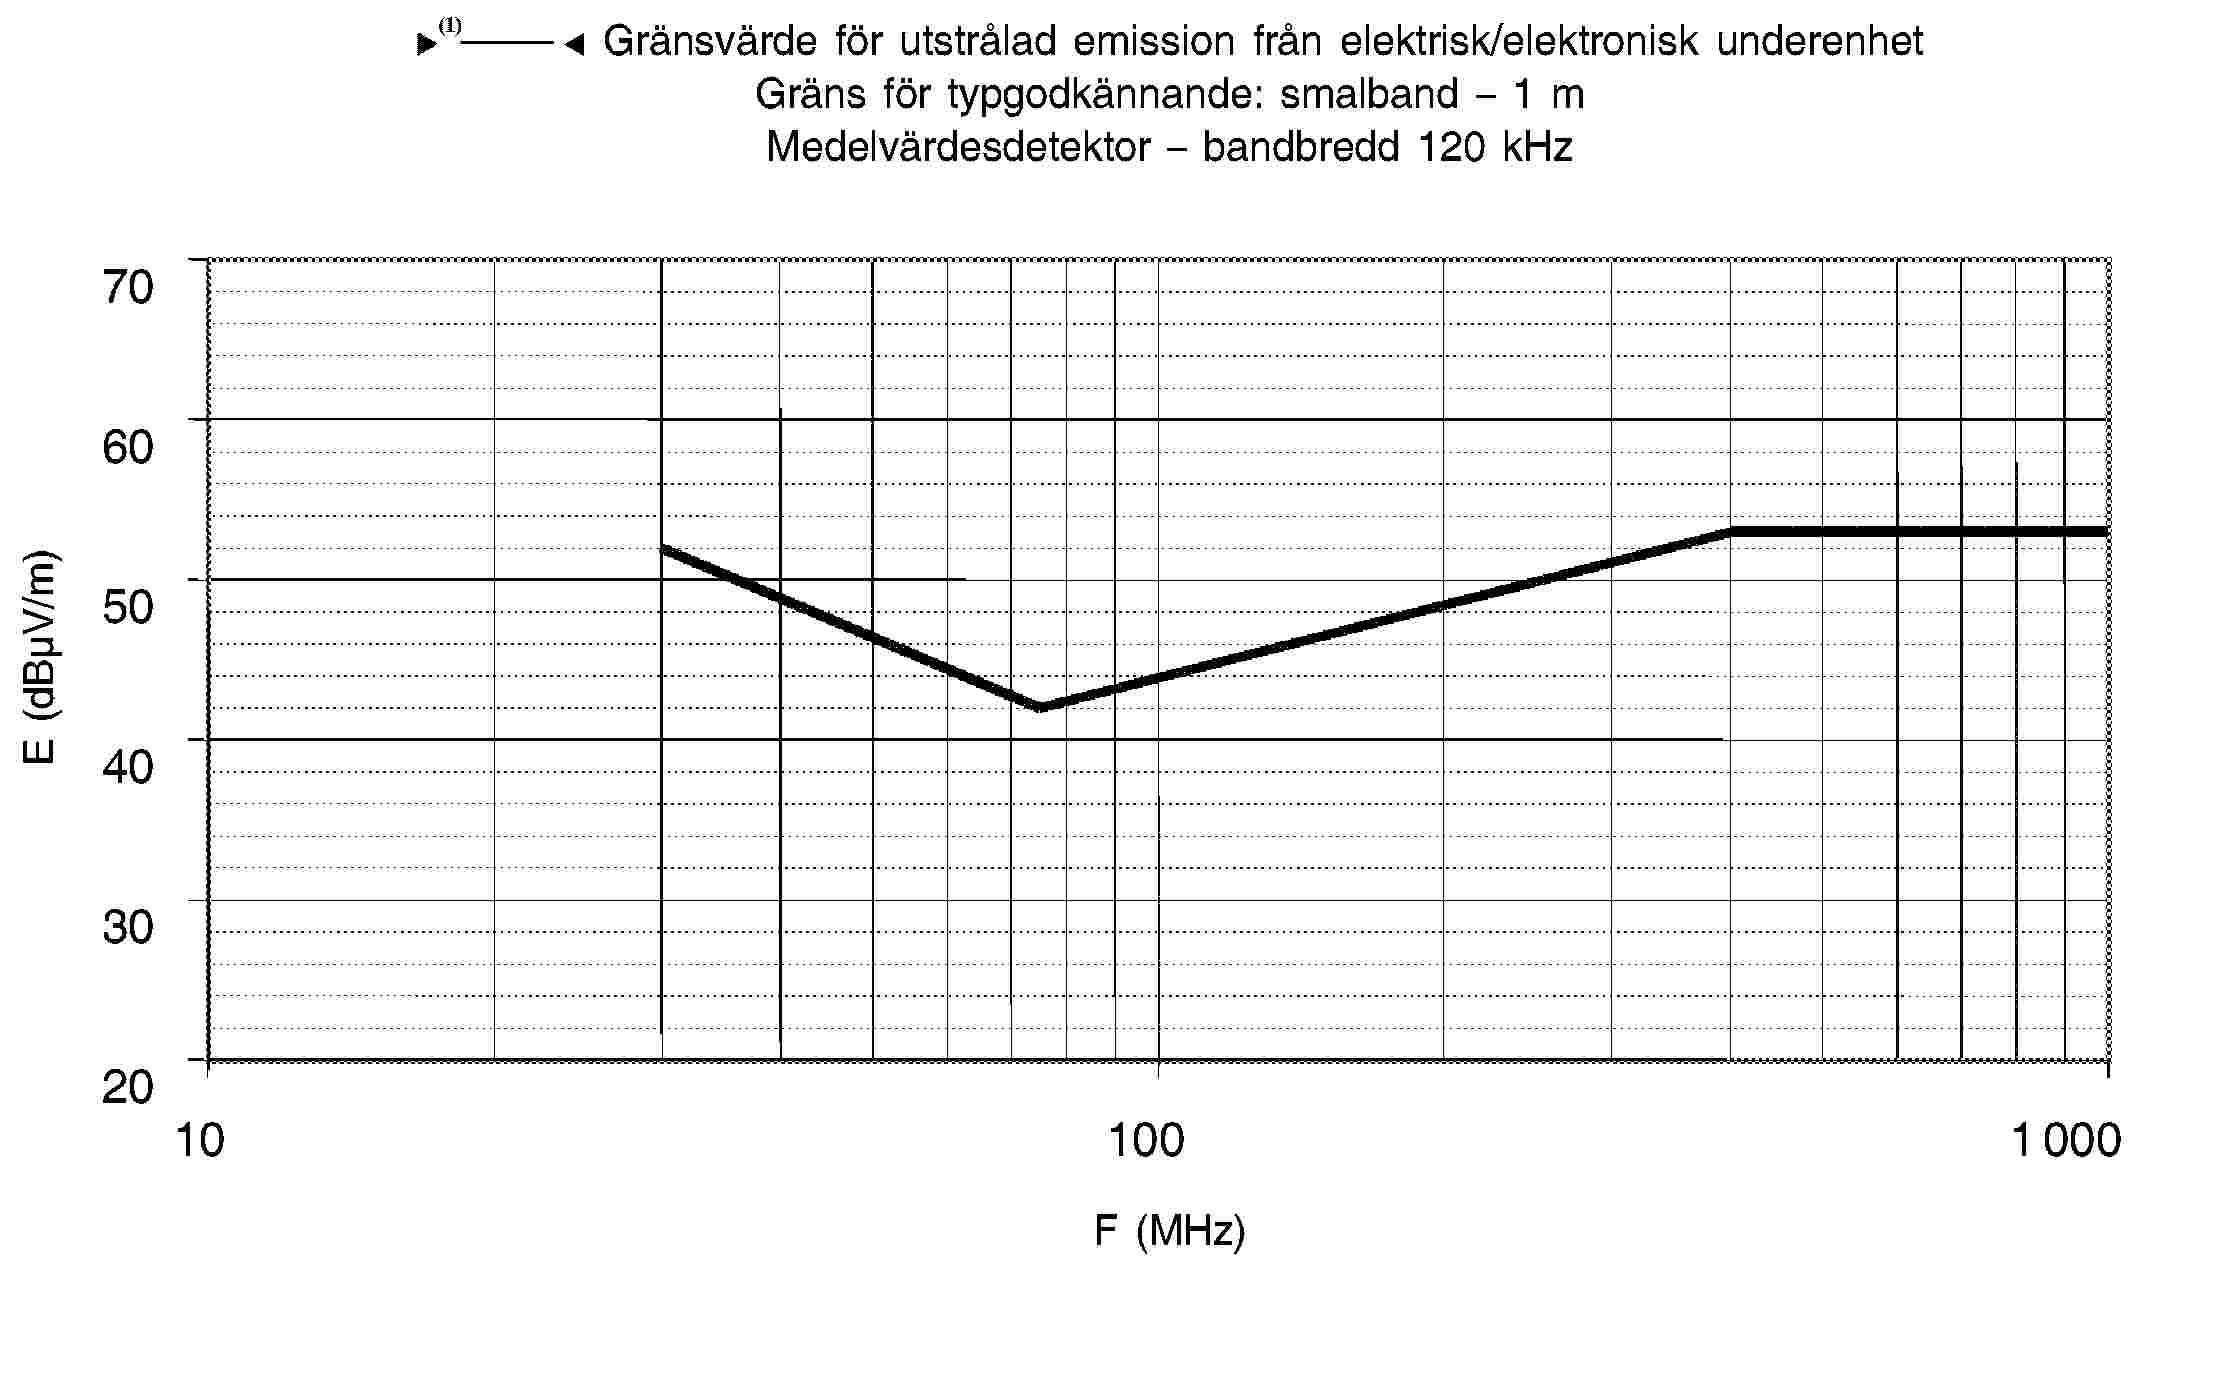 95/54/EG – Gränsvärde för utstrålad emission från elektrisk/elektronisk underenhet Gräns för typgodkännande: smalband – 1 m Medelvärdesdetektor – bandbredd 120 kHz70 60 50 40 30 2010 100 1000F (MHz)E (dBμV/m)